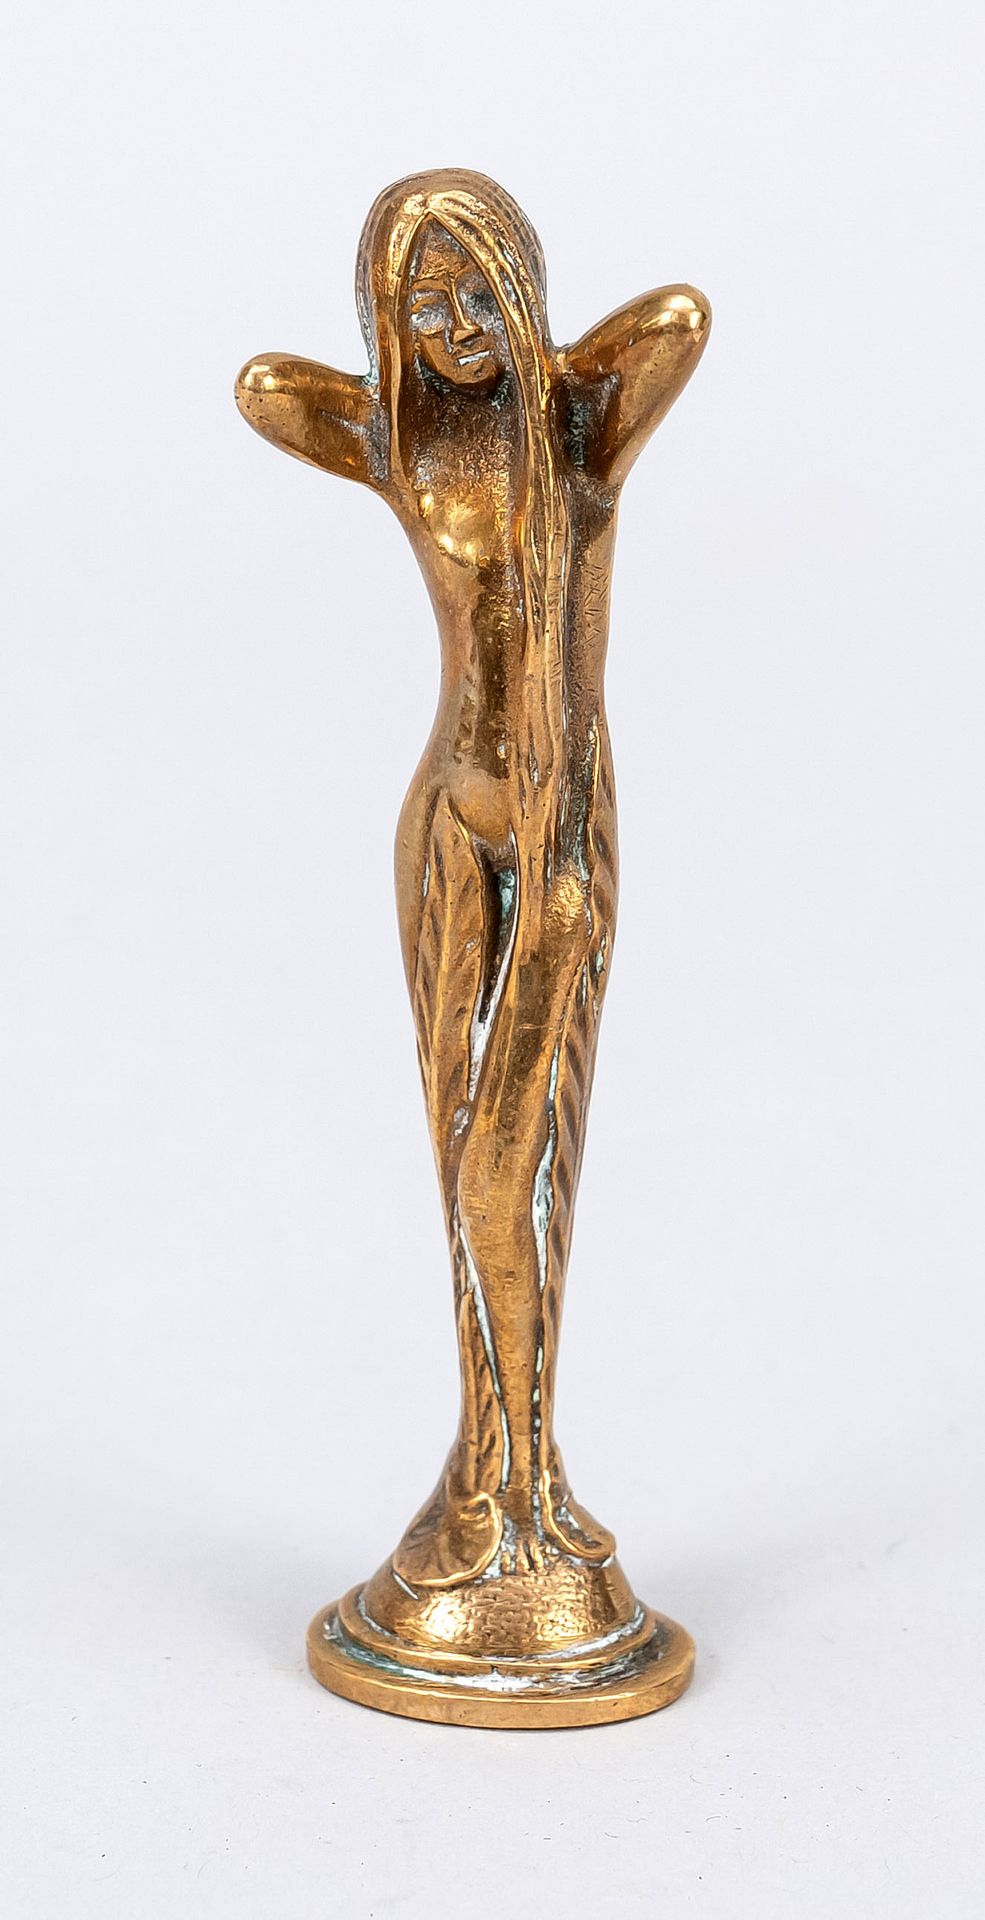 Null Petschaft，新艺术派，约1900年，长发女孩双手抱头，长长的叶子缠绕在她的腿上，印记脸部有MS字样，抛光黄铜O.青铜，高10.5厘米